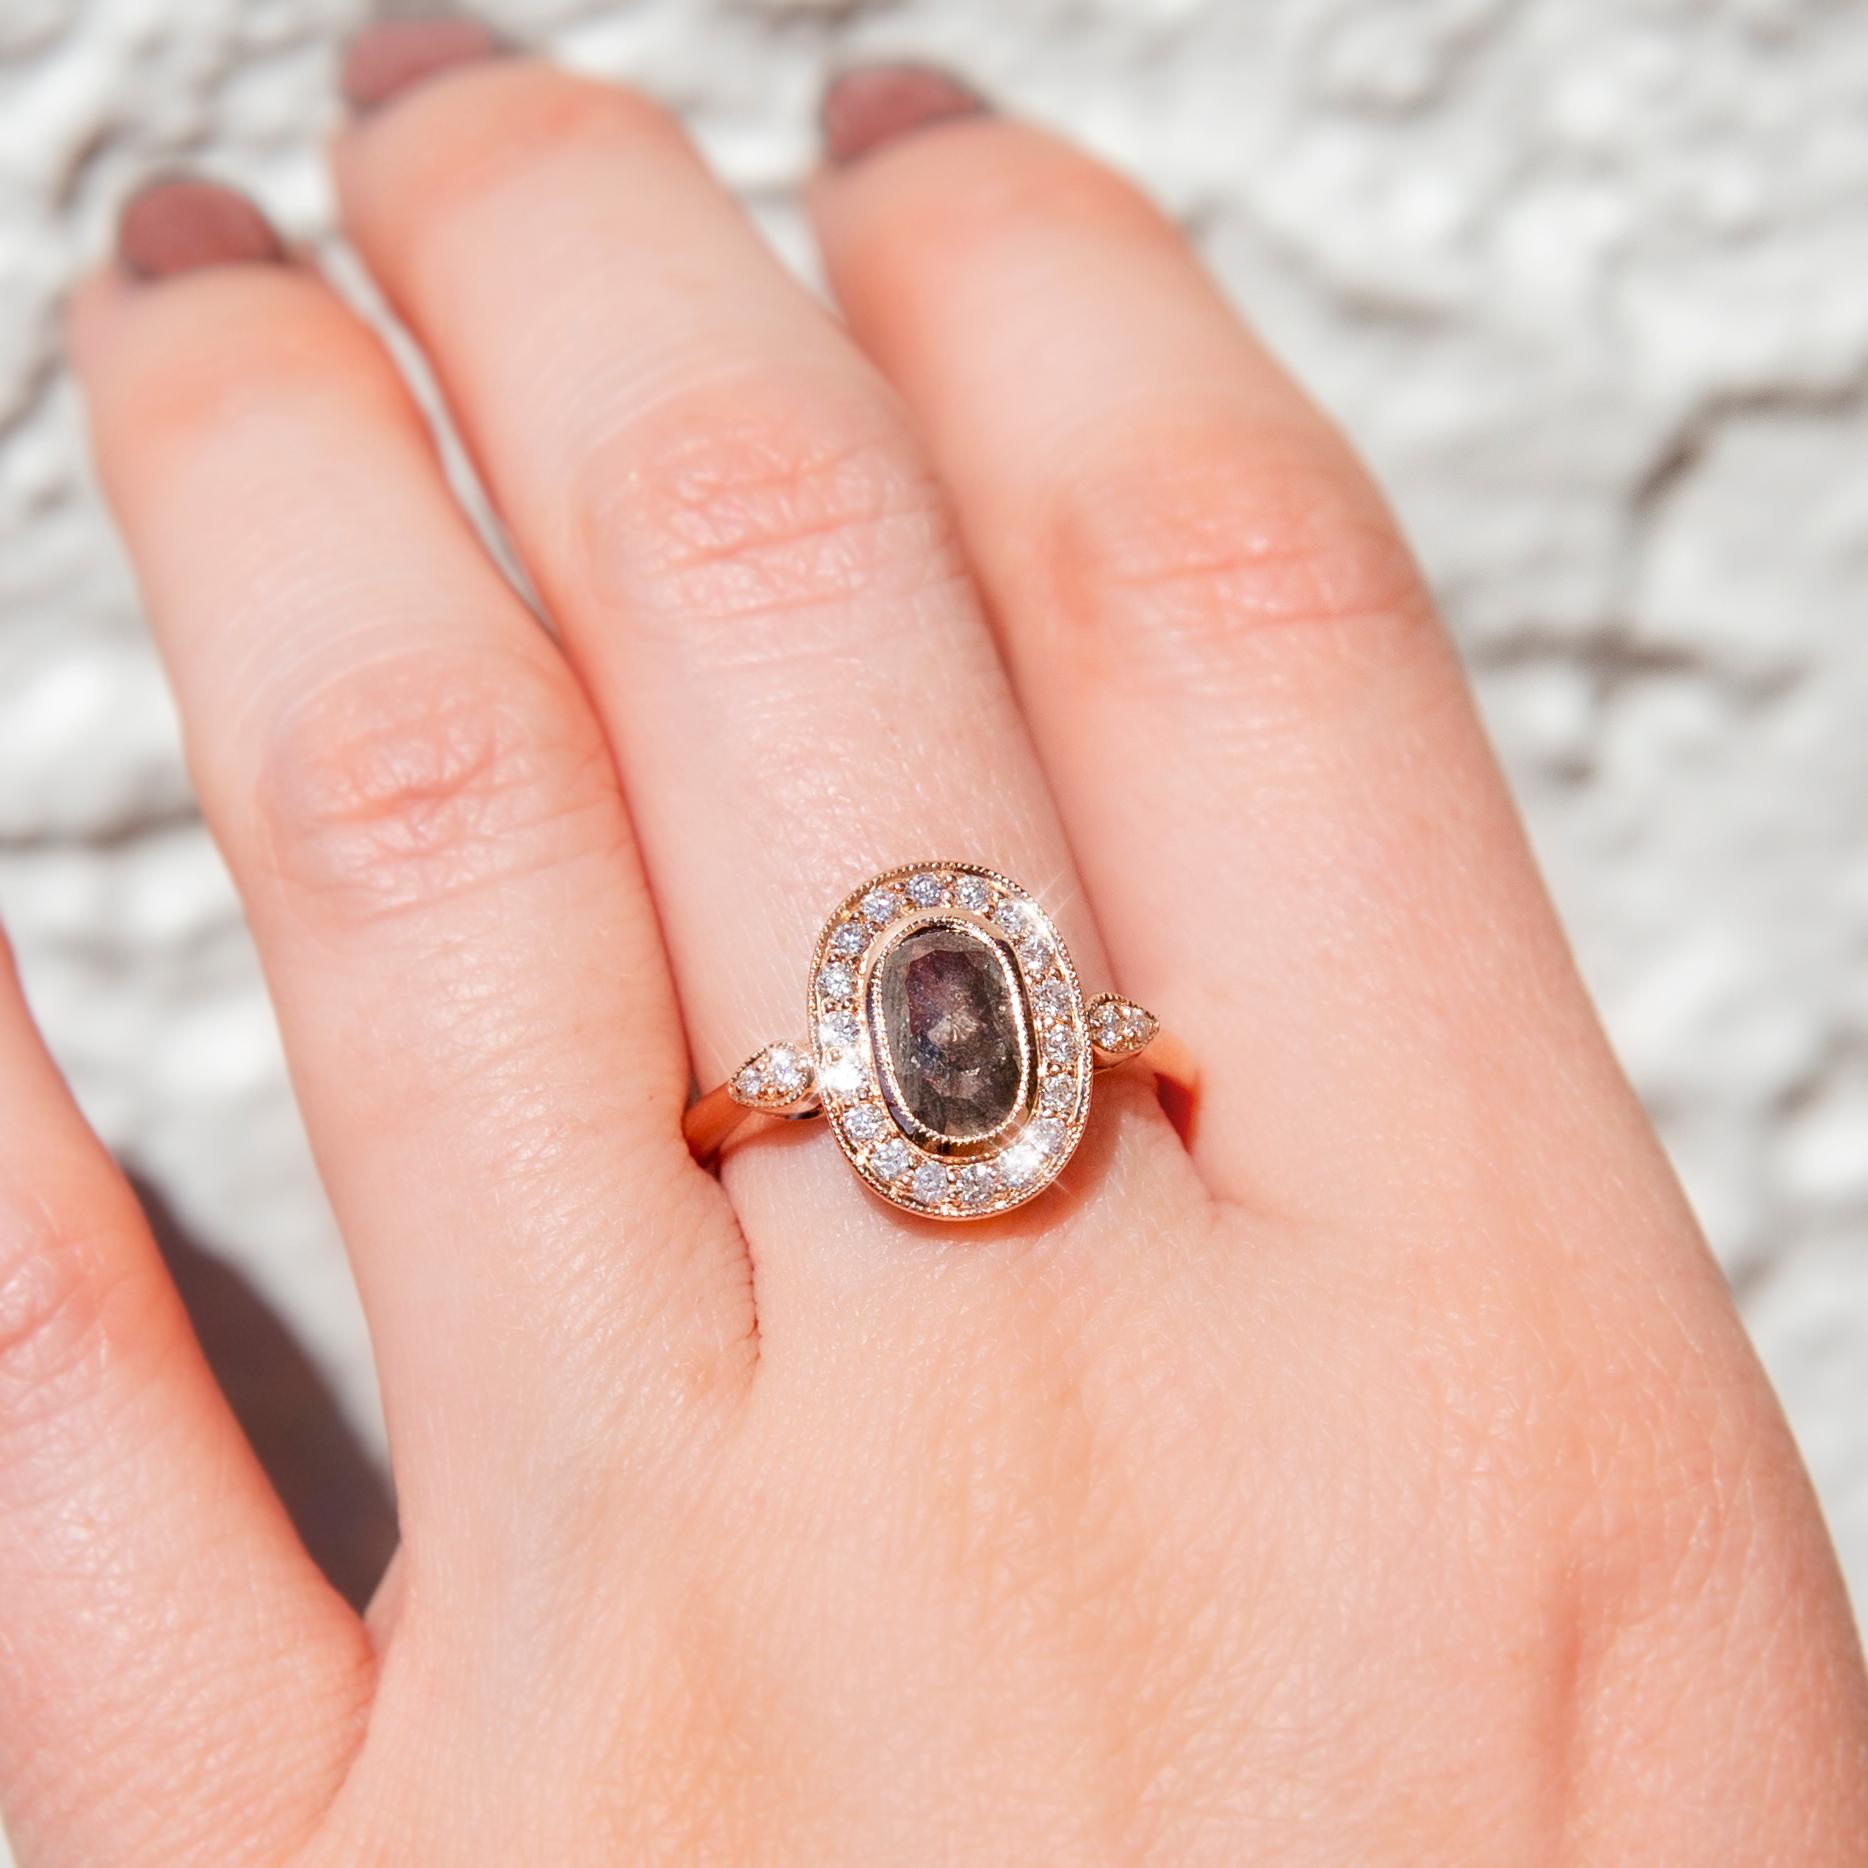 Réalisée avec amour en or rose 18 carats, cette superbe bague contemporaine présente un magnifique diamant ovale de taille rose de 1,13 carat de type 